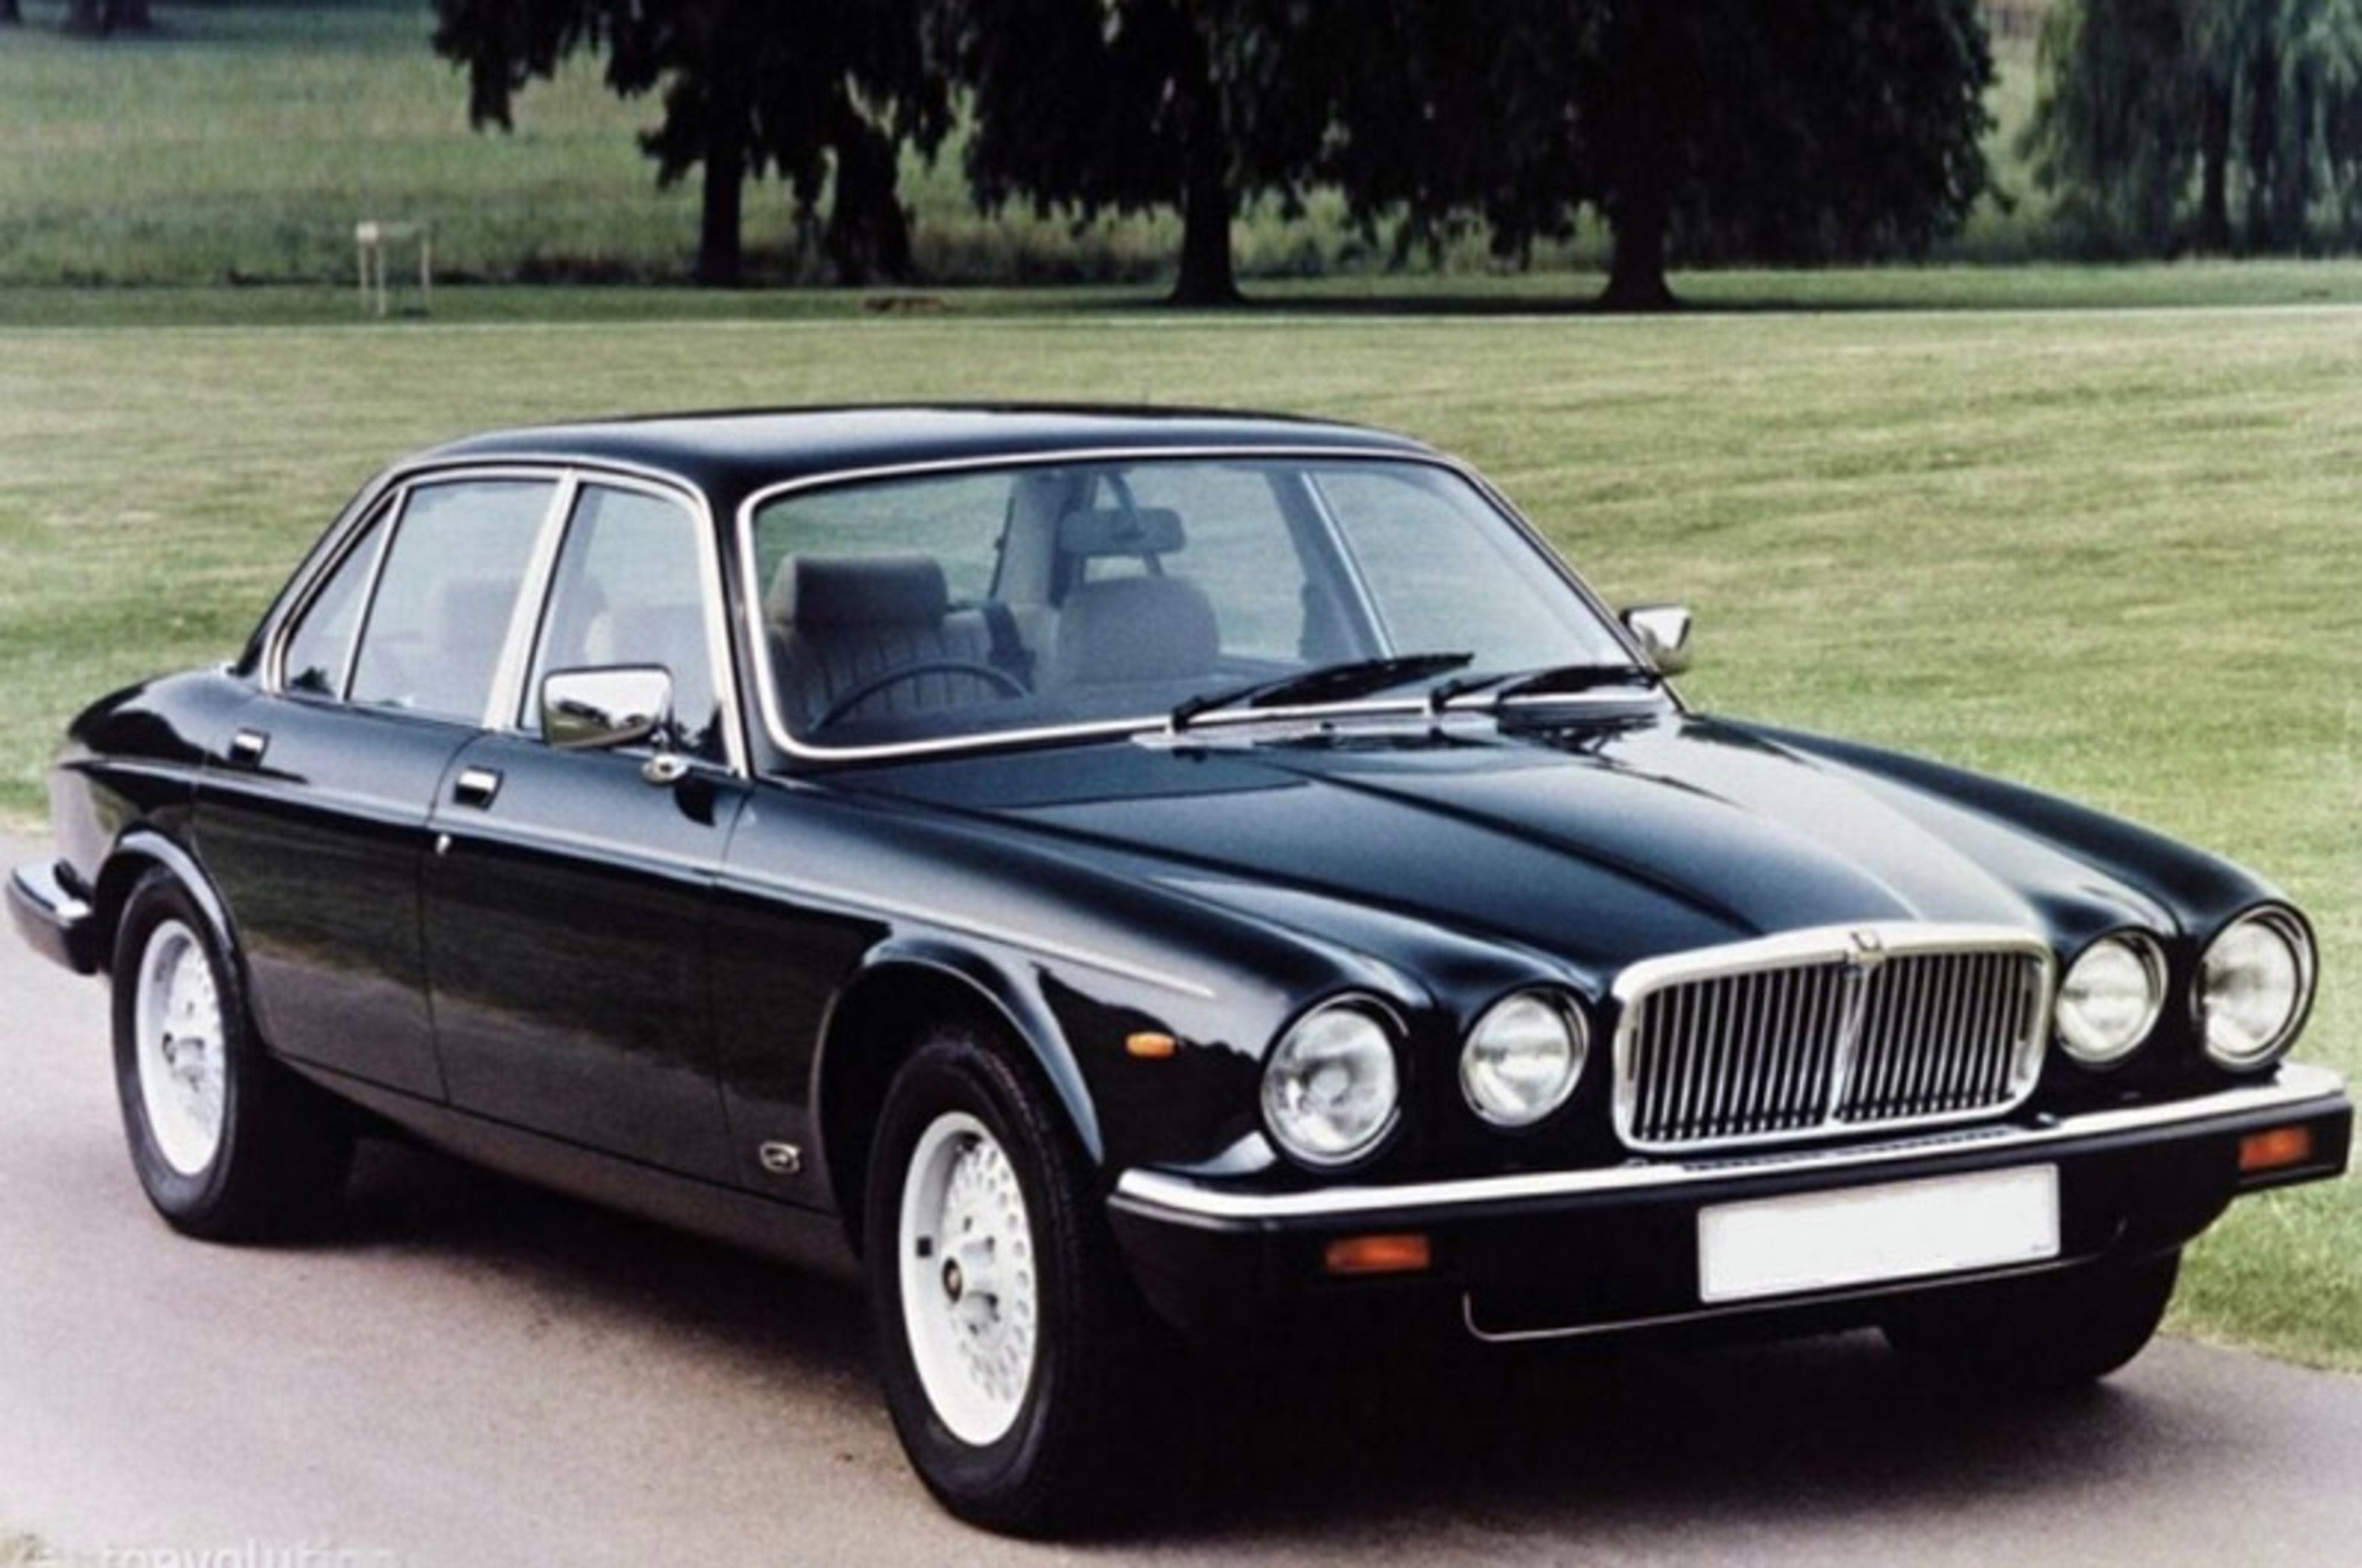 Jaguar XJ6 (1979-86)